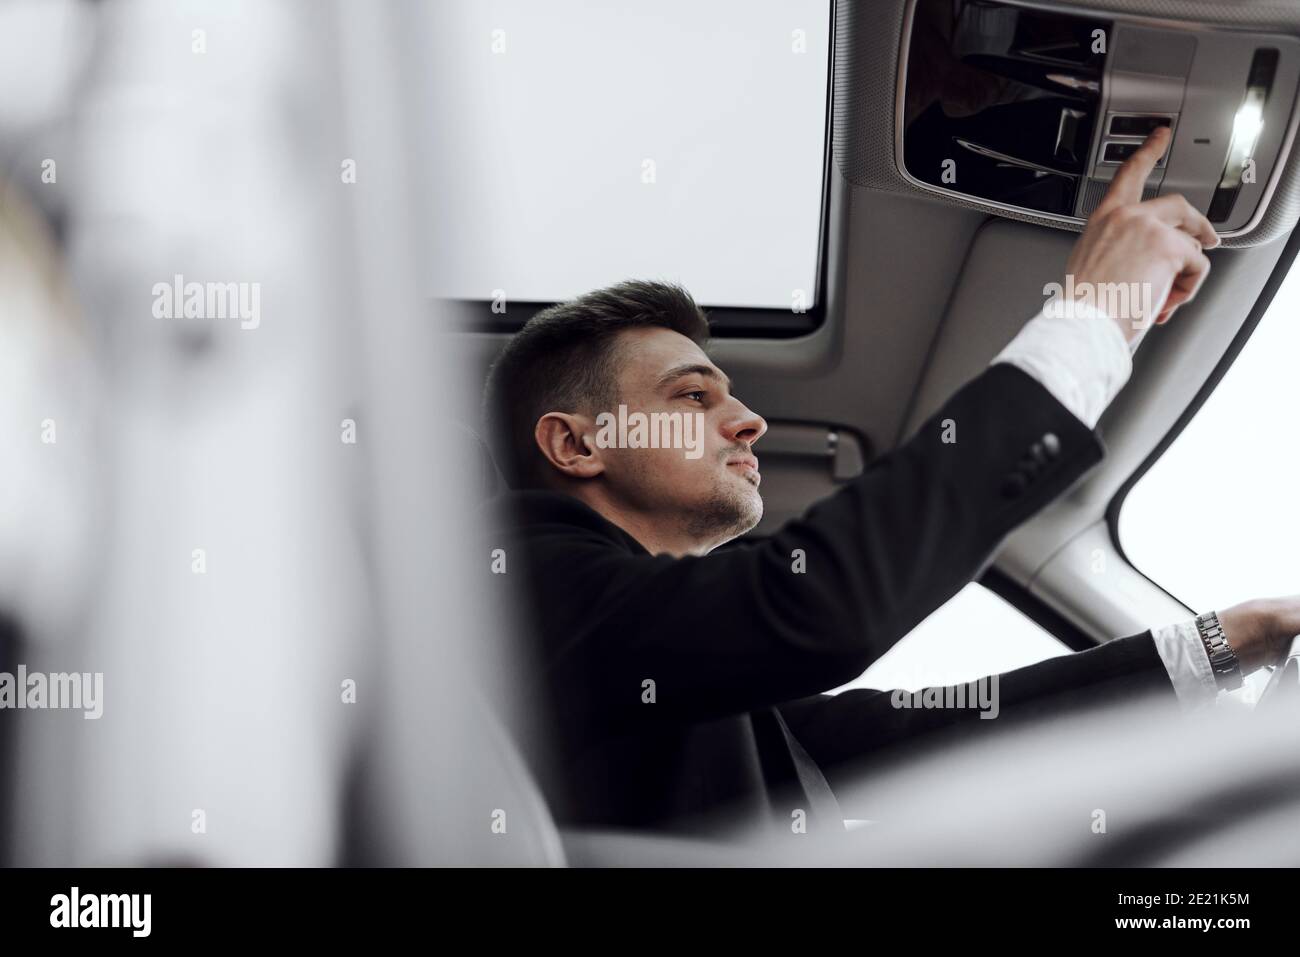 Foto recortada de hombre guapo que alquila un automóvil moderno mientras pulsa el botón. Concepto de alquiler y cambio Foto de stock